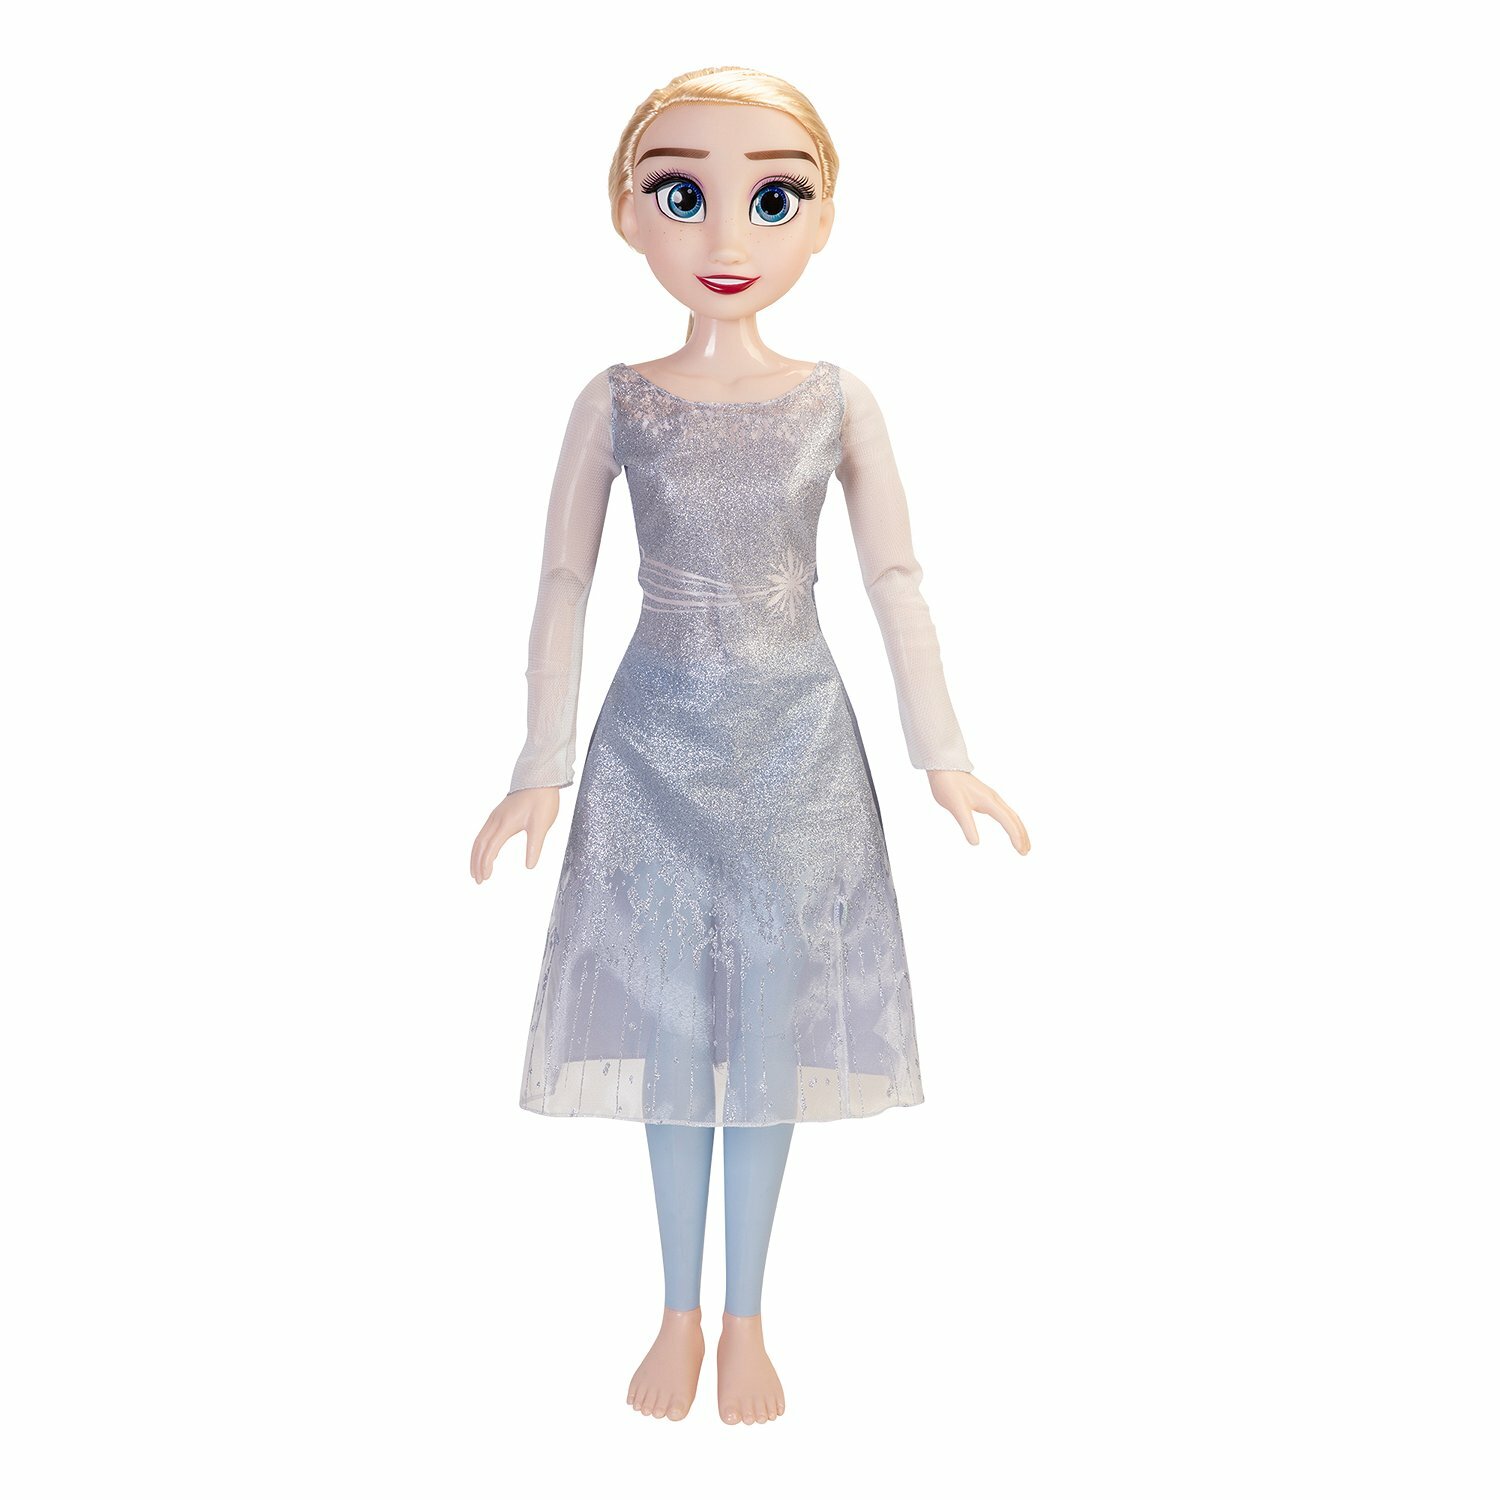 Кукла Дисней Холодное сердце Эльза 80 см Disney Frozen 2